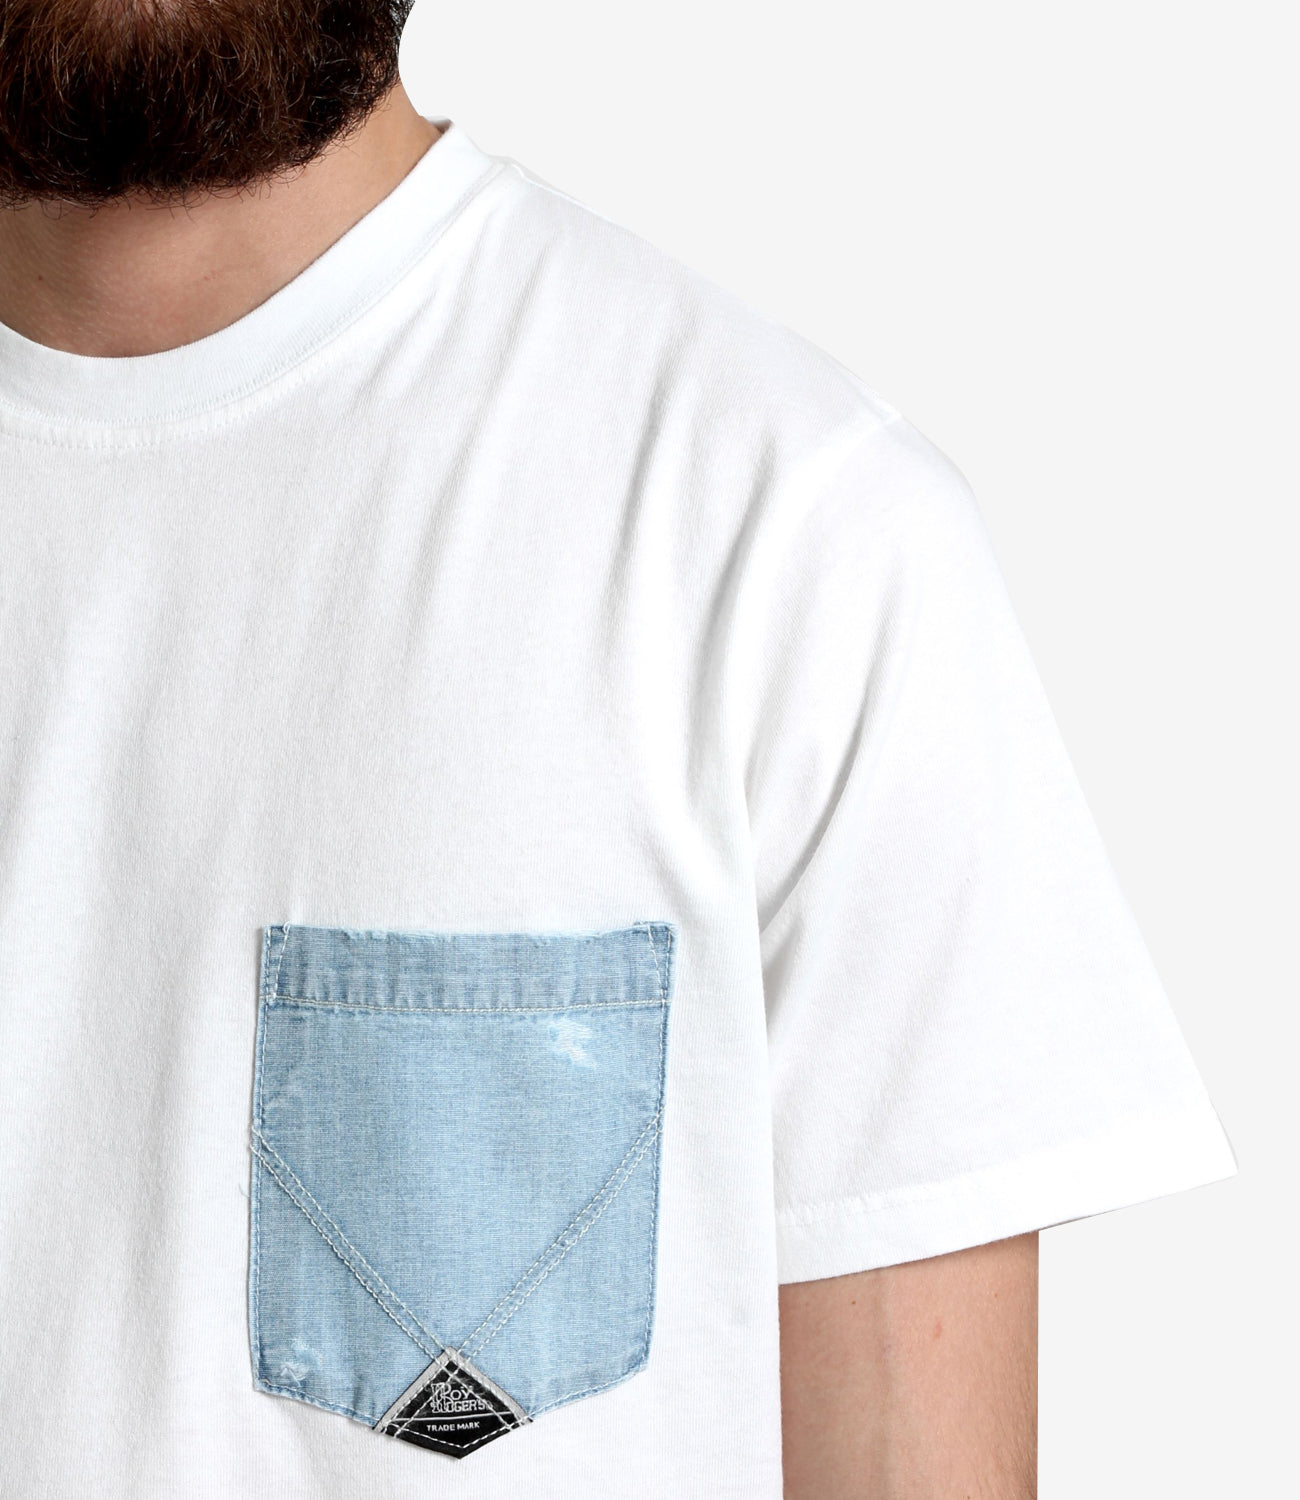 Roy Roger's | T-Shirt Pocket White